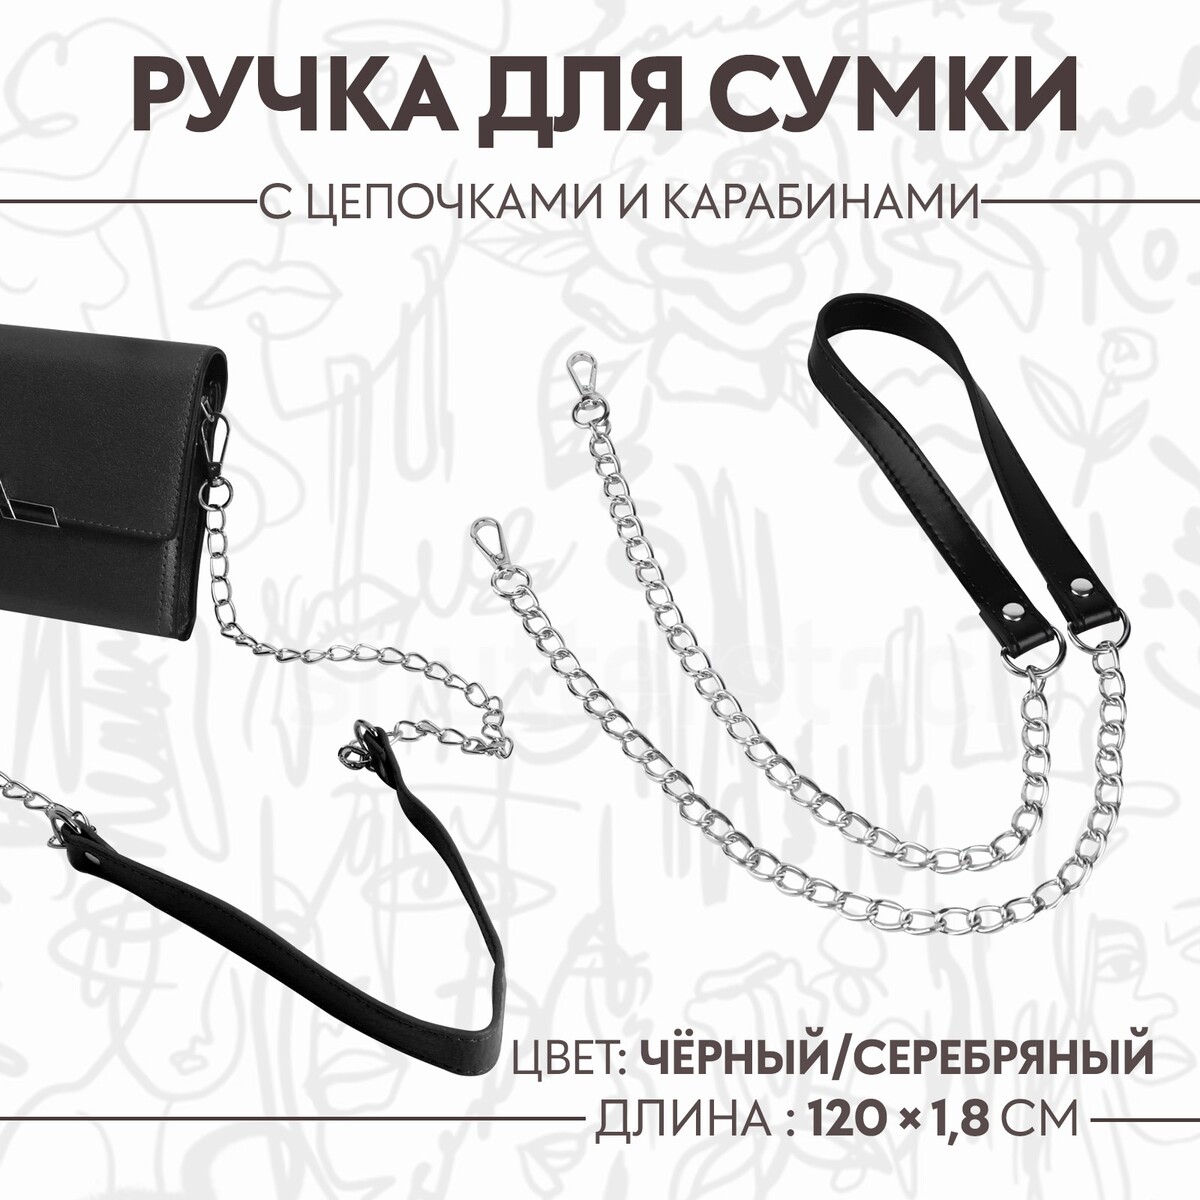 Ручка для сумки, с цепочками и карабинами, 120 × 1,8 см, цвет черный ручка для сумки лакированная с карабинами 60 ± 1 см